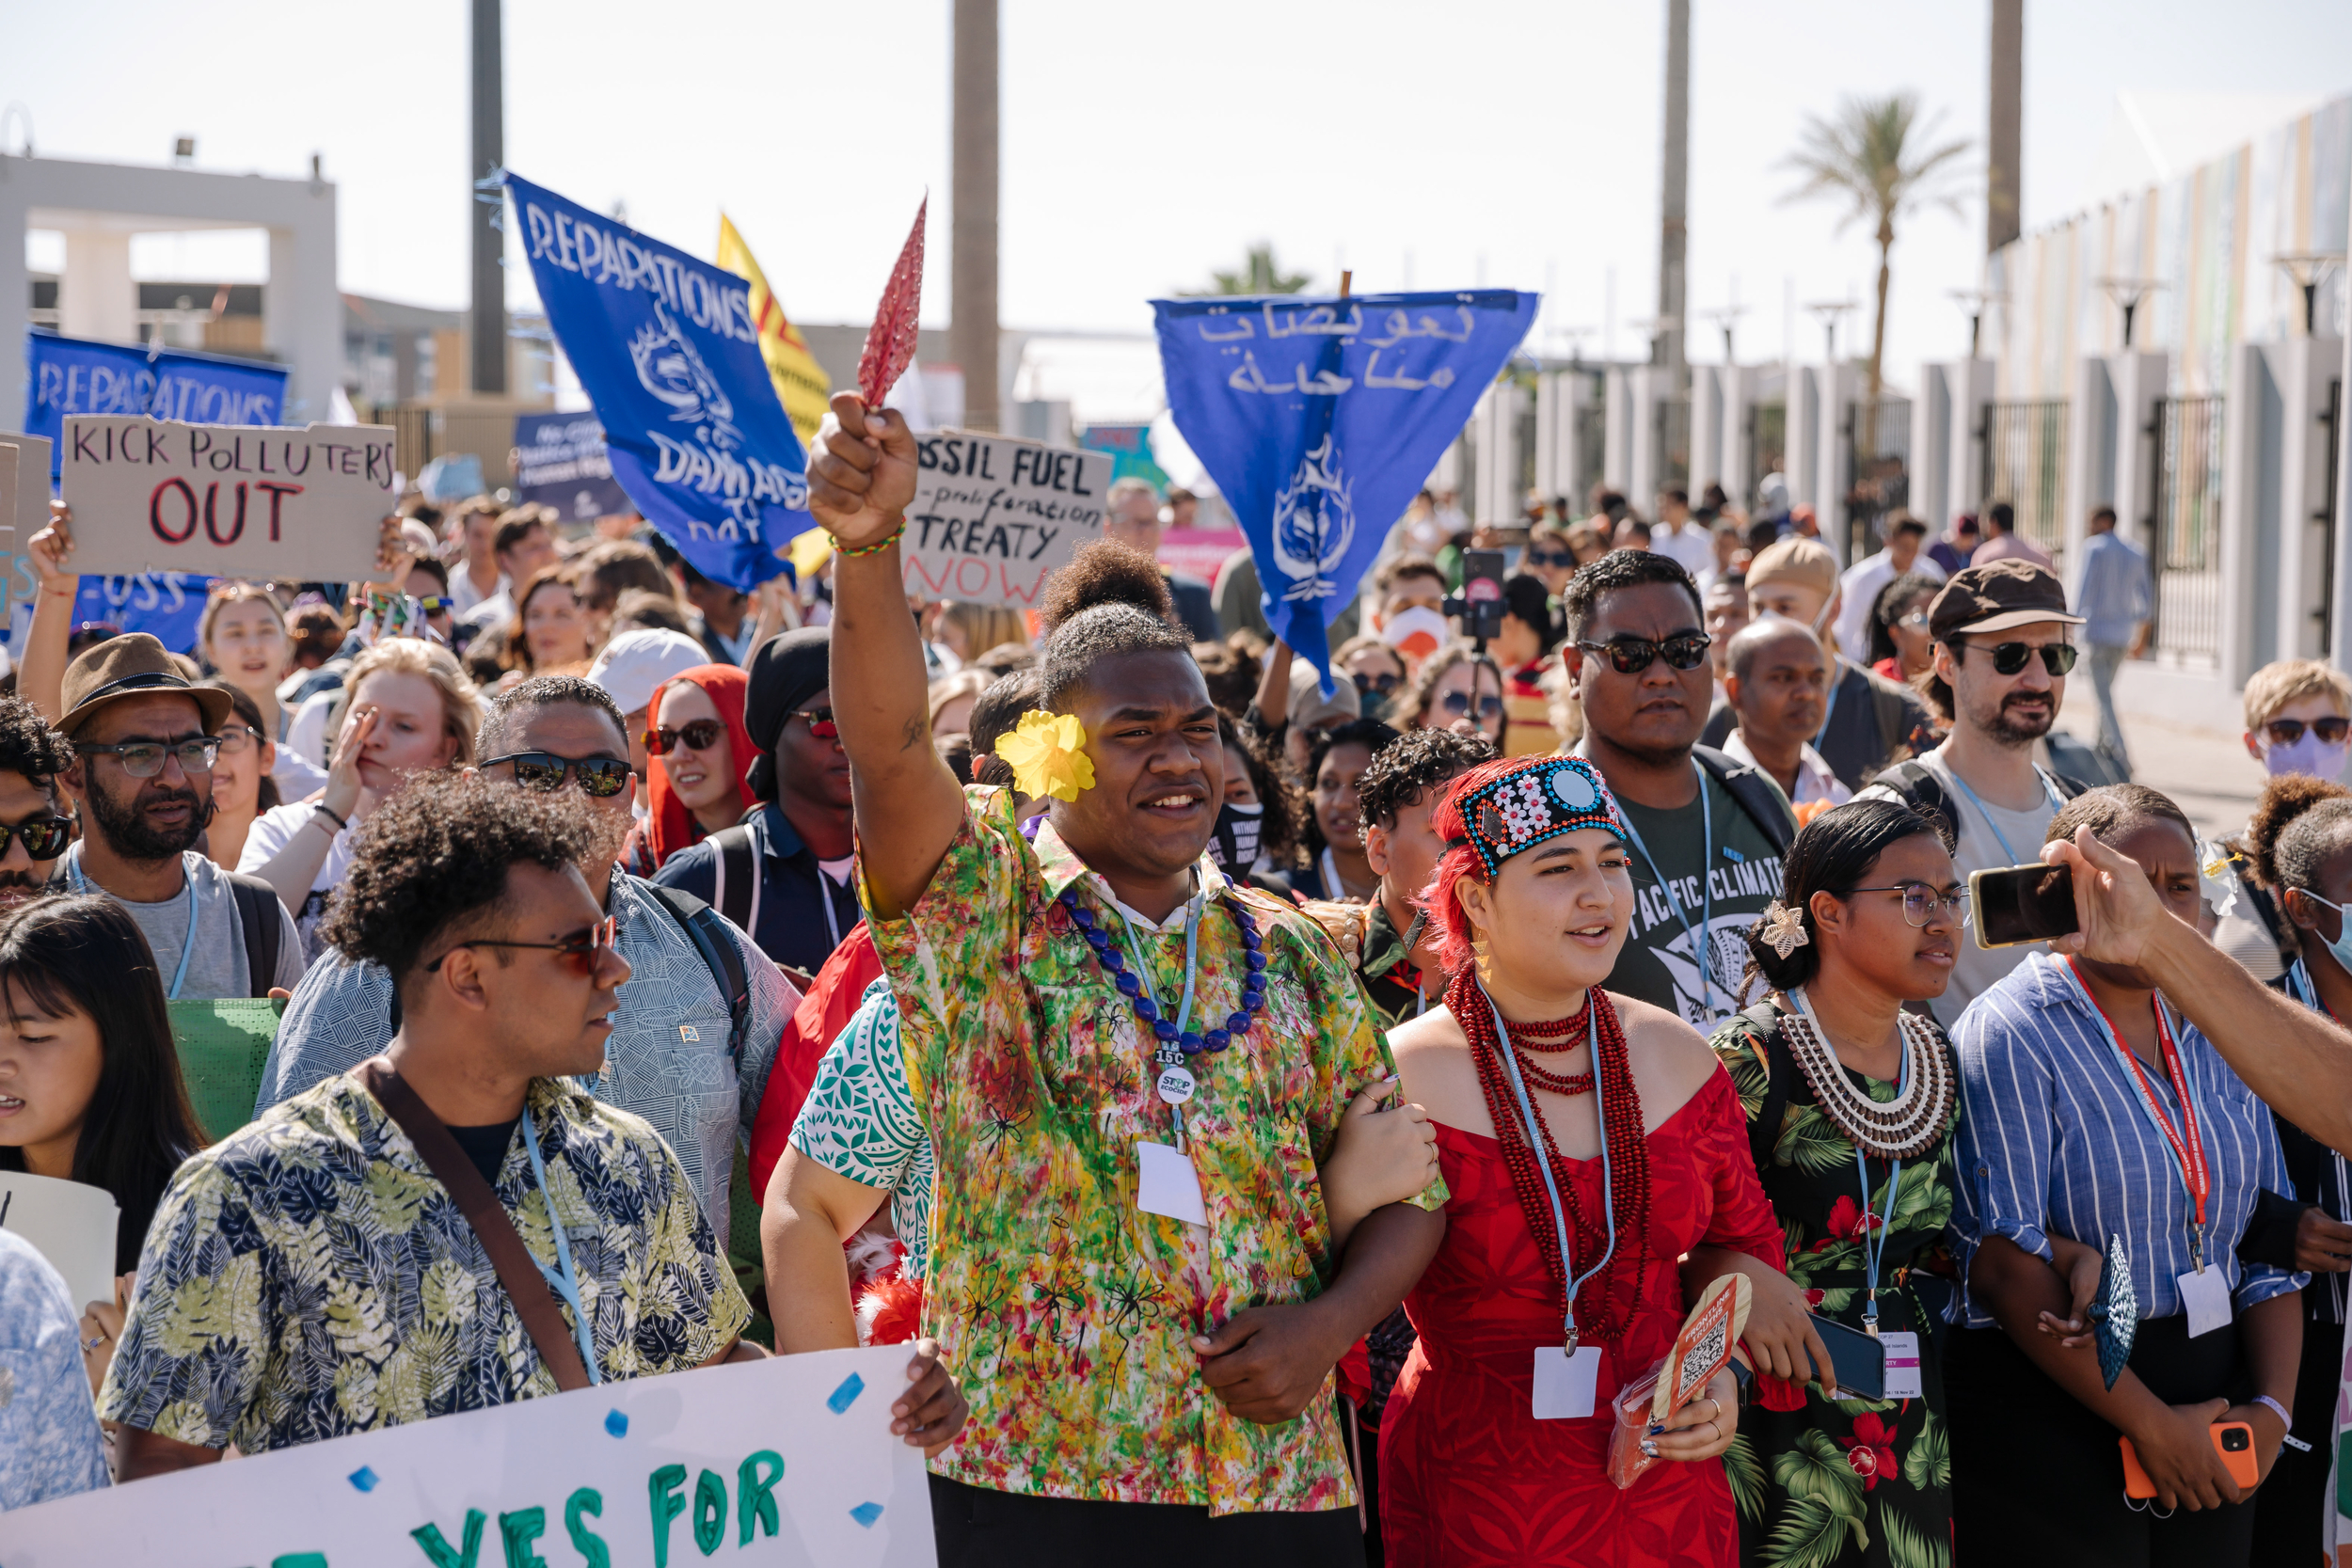 Manifestantes climáticas en Egipto durante la COP27. Las activistas exigen que las empresas y países contaminantes paguen su parte justa para reparar el daño climático.© Marie Jacquemin / Greenpeace